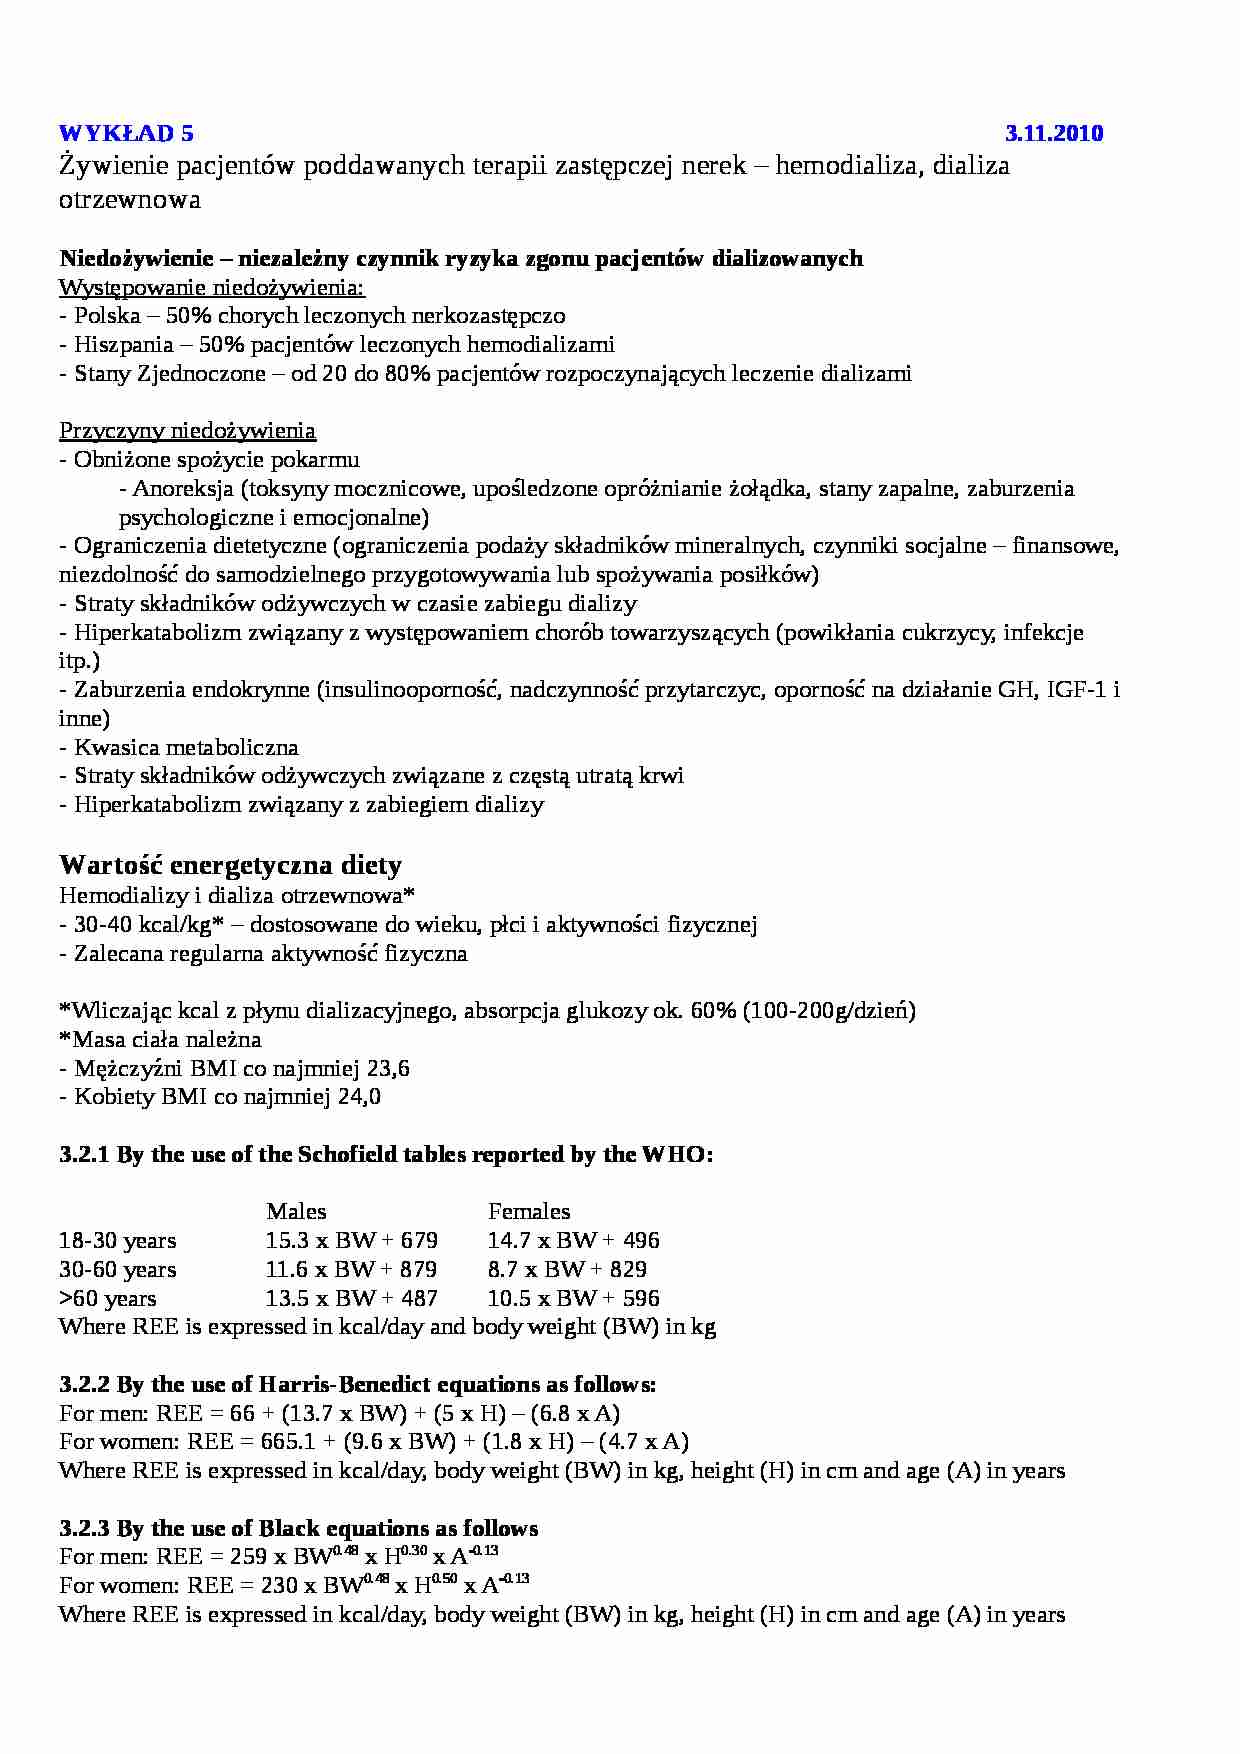 hemodializa i dializa otrzewnowa - strona 1